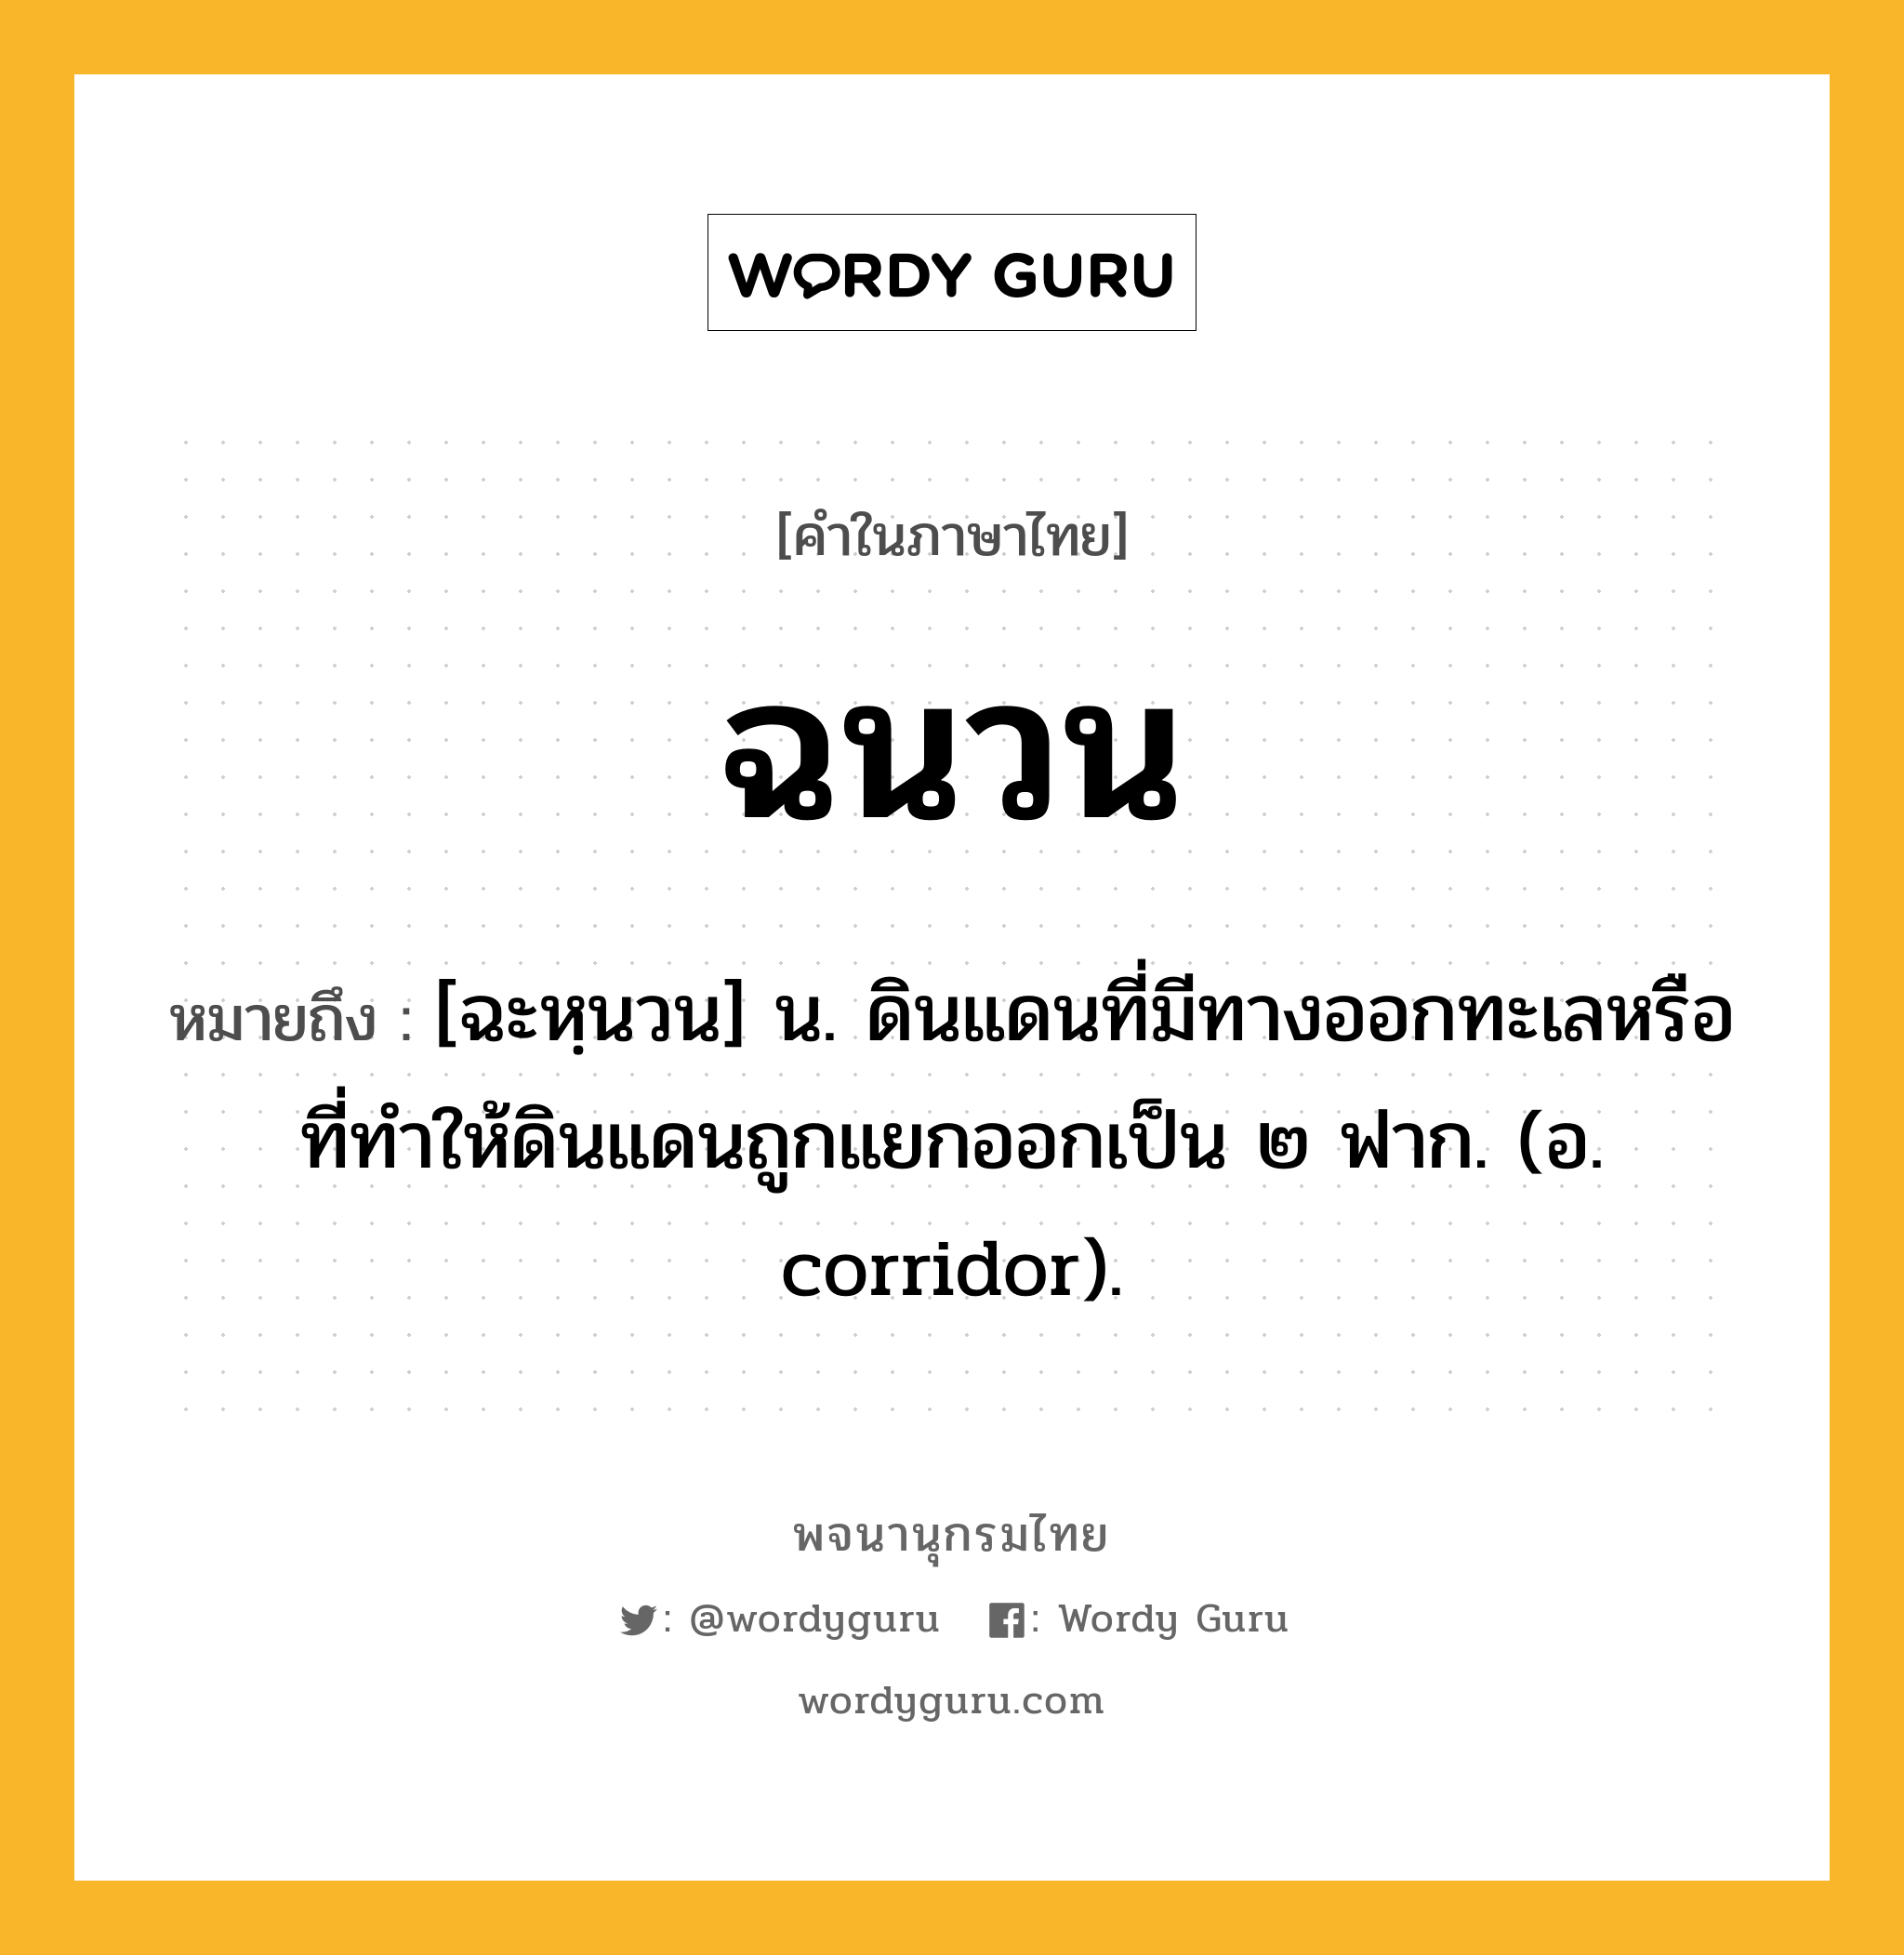 ฉนวน หมายถึงอะไร?, คำในภาษาไทย ฉนวน หมายถึง [ฉะหฺนวน] น. ดินแดนที่มีทางออกทะเลหรือที่ทําให้ดินแดนถูกแยกออกเป็น ๒ ฟาก. (อ. corridor).